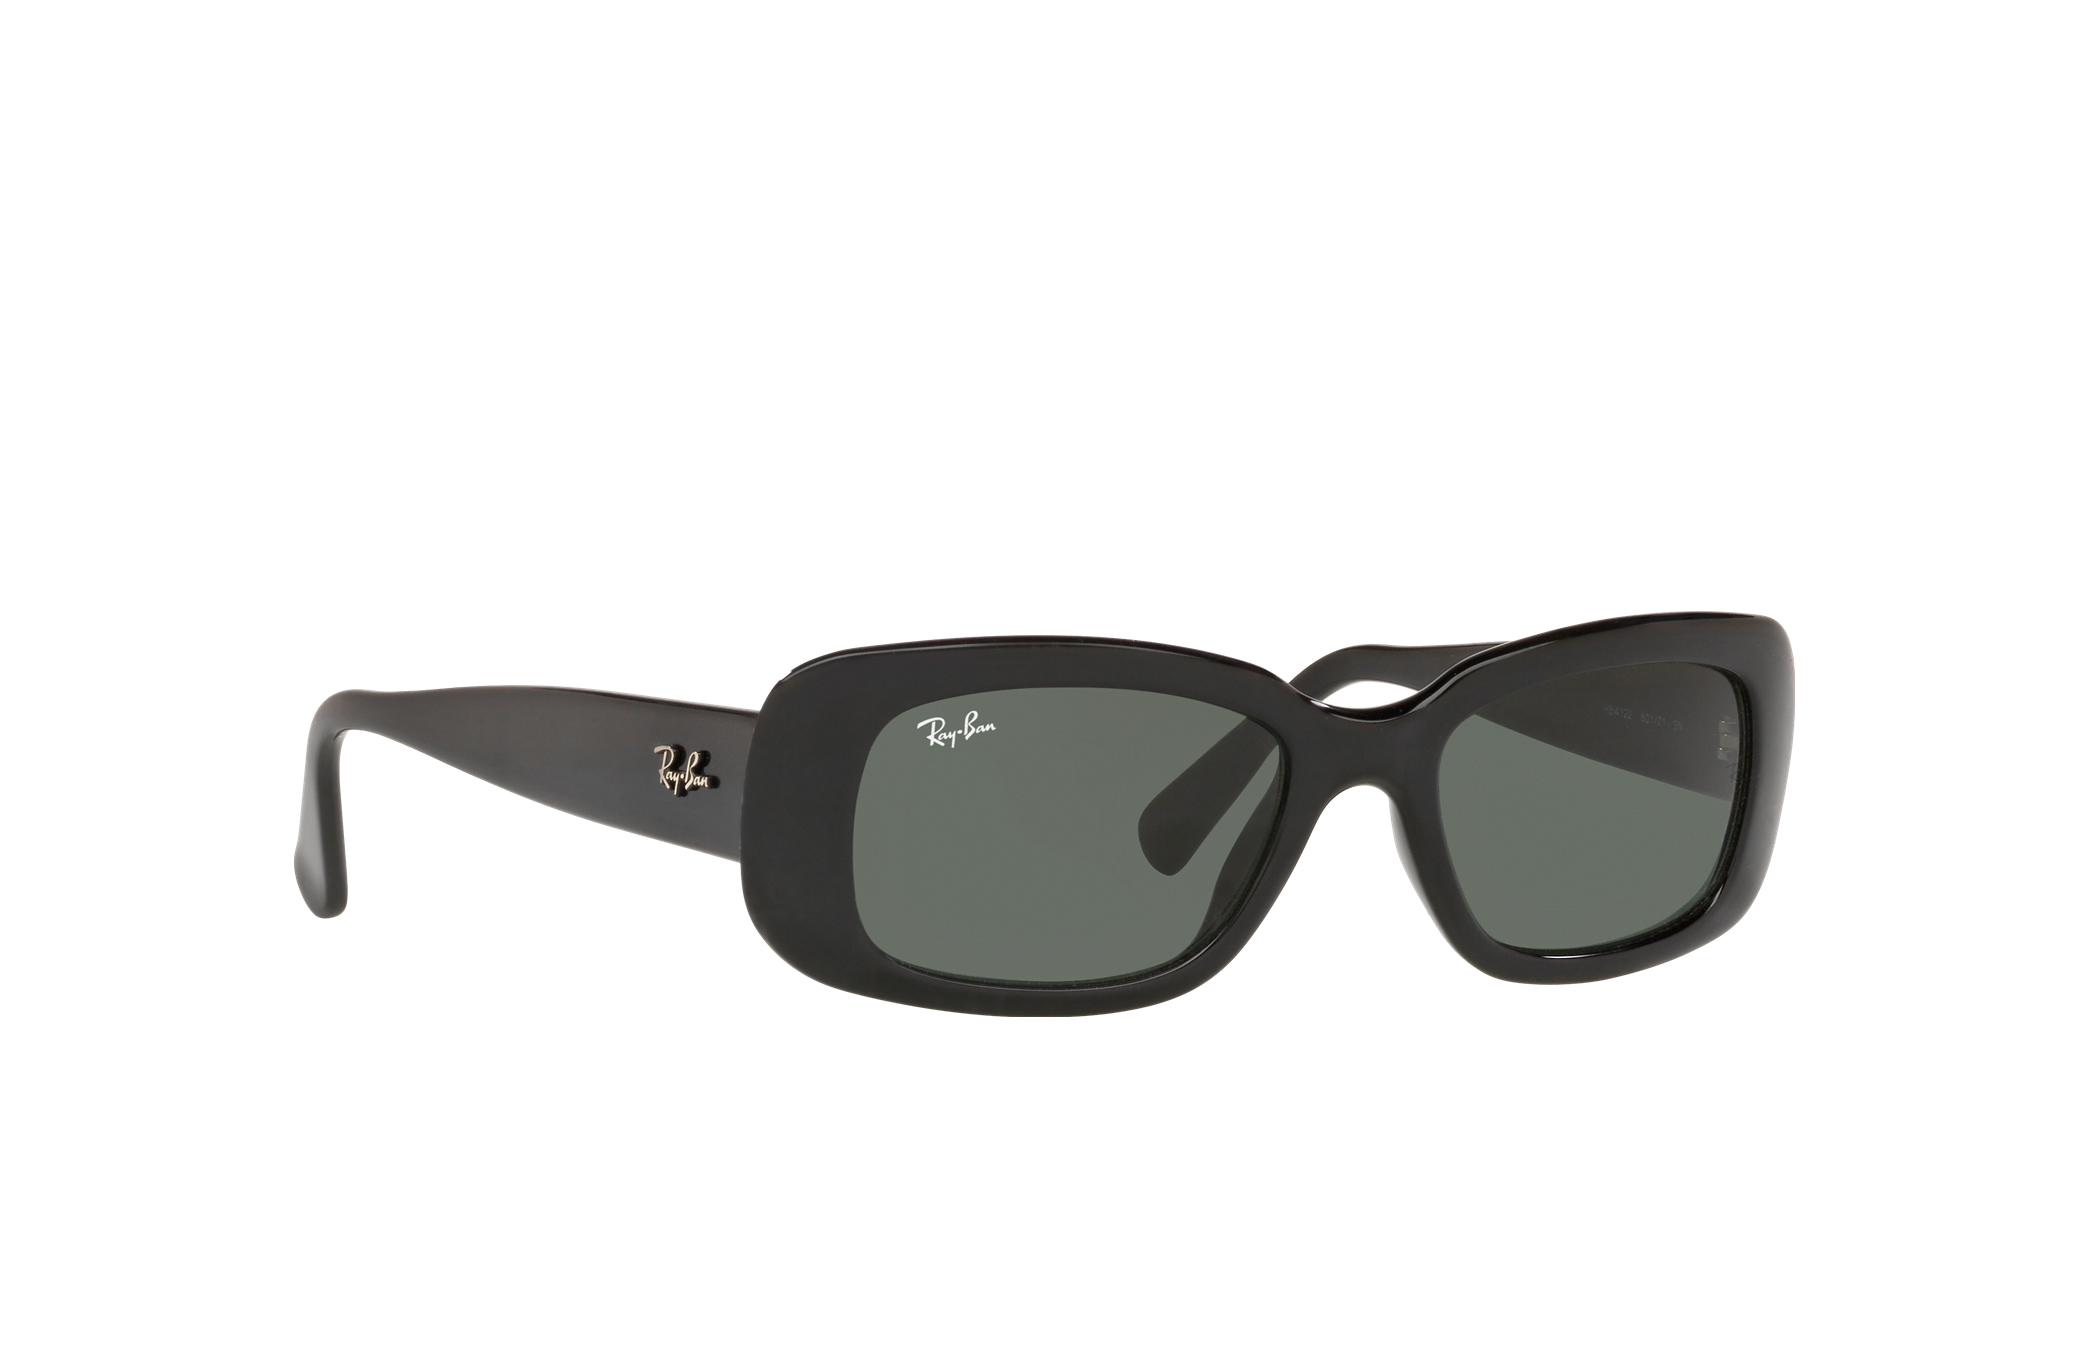 Ray-Ban Zonnebril Frame Alleen RB 4122 601/71 Glanzend Zwart Andere Vorm Italië 49mm Accessoires Zonnebrillen & Eyewear Brillen 